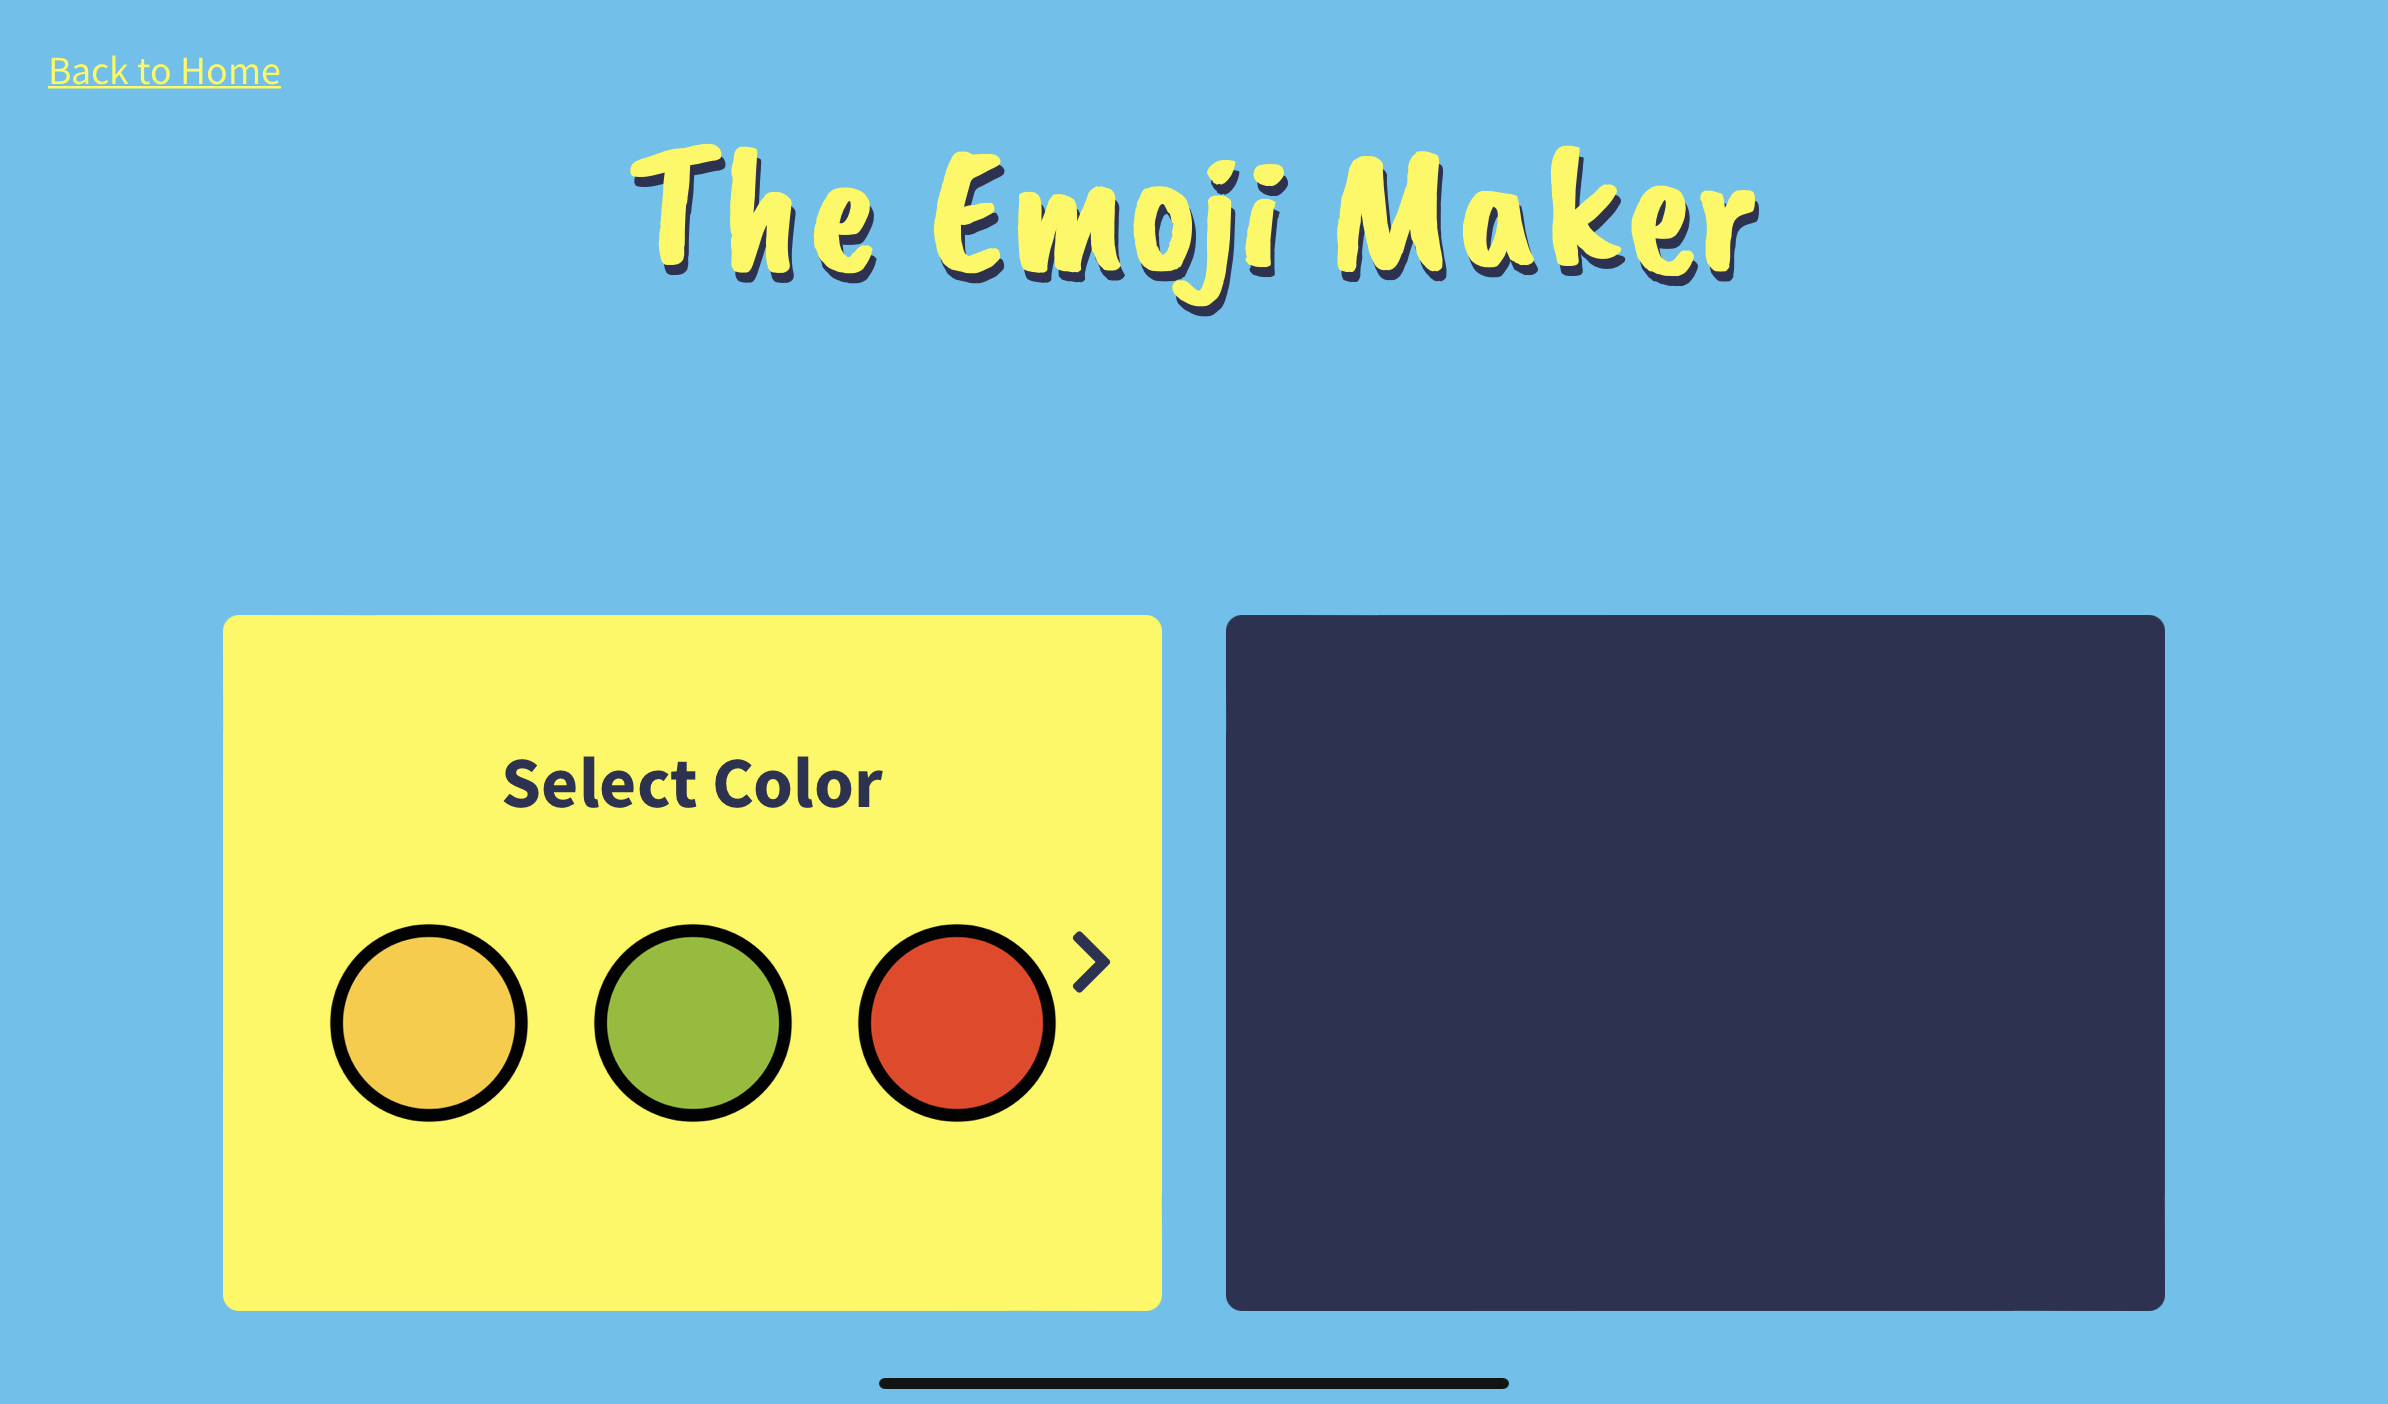 Emoji Maker